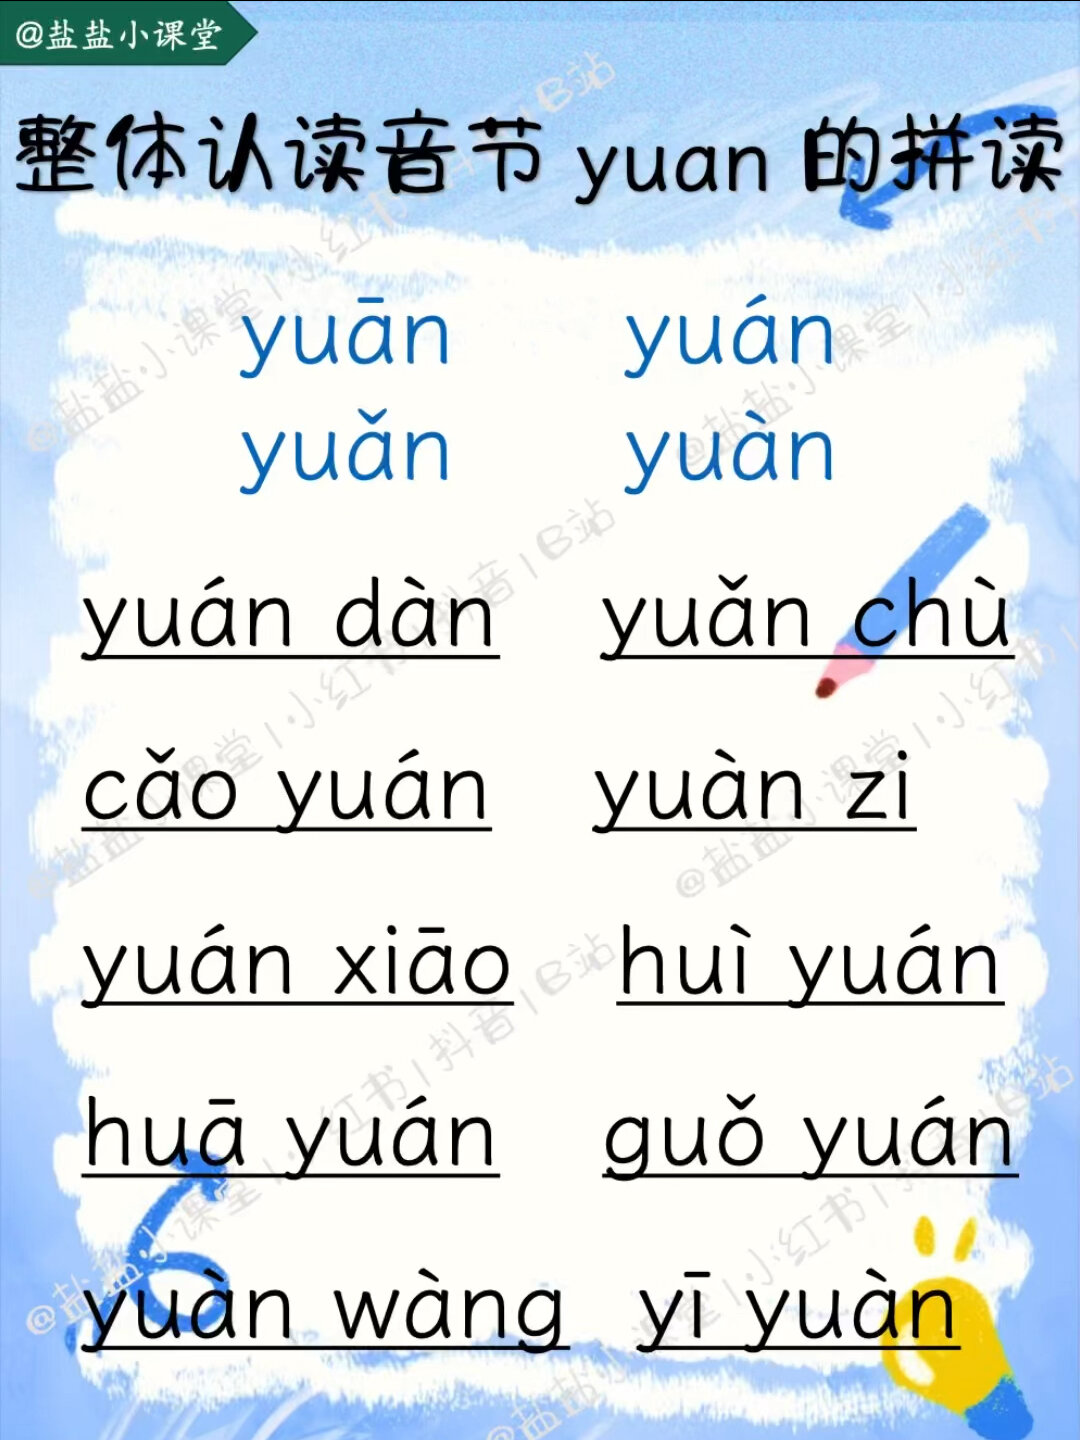 「拼音带读」《整体认读音节音节yuan》